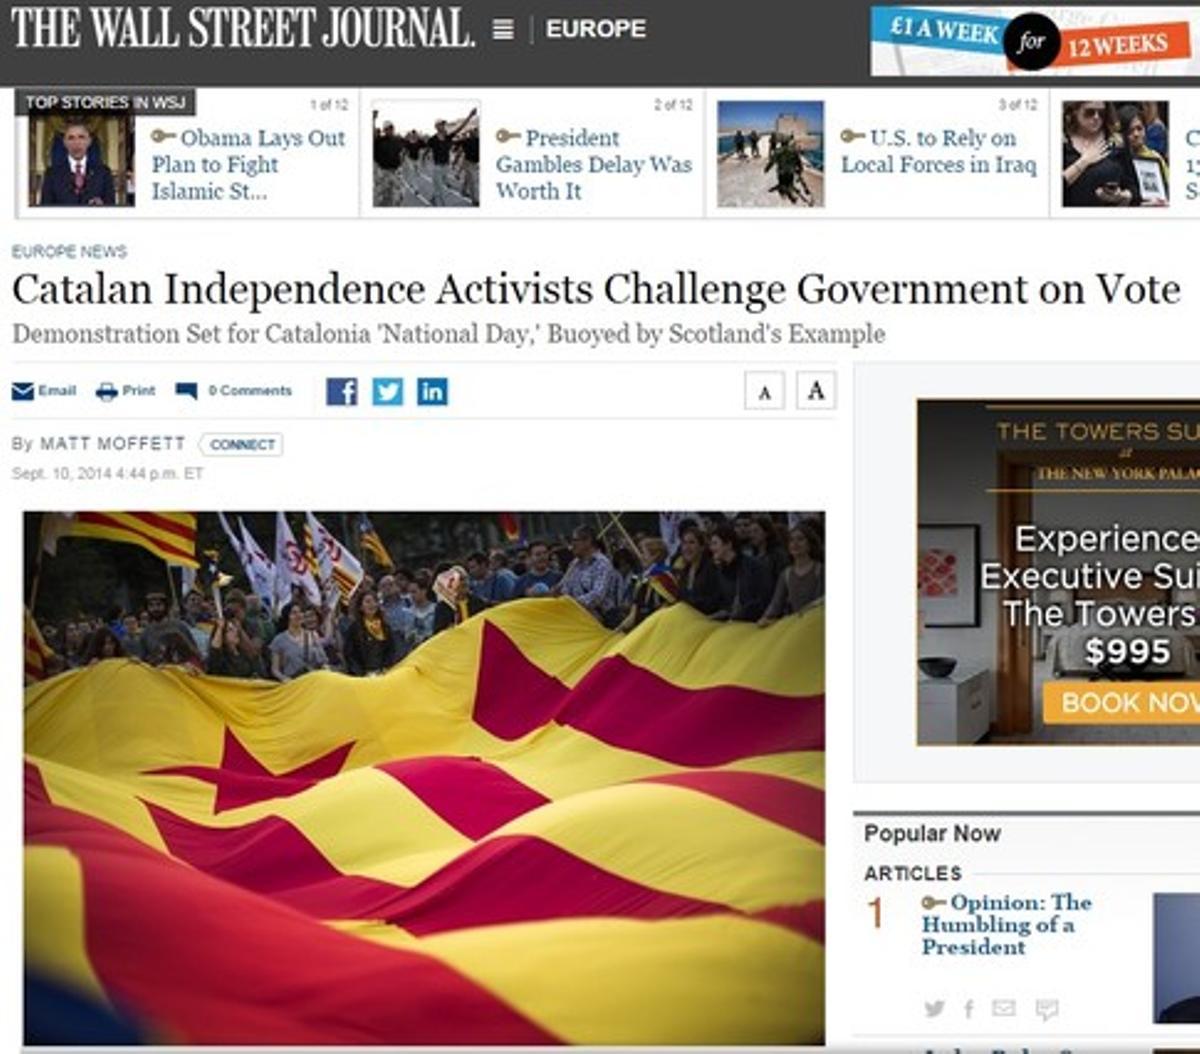 El diario económico líder en EEUU augura una crisis constitucional en España.